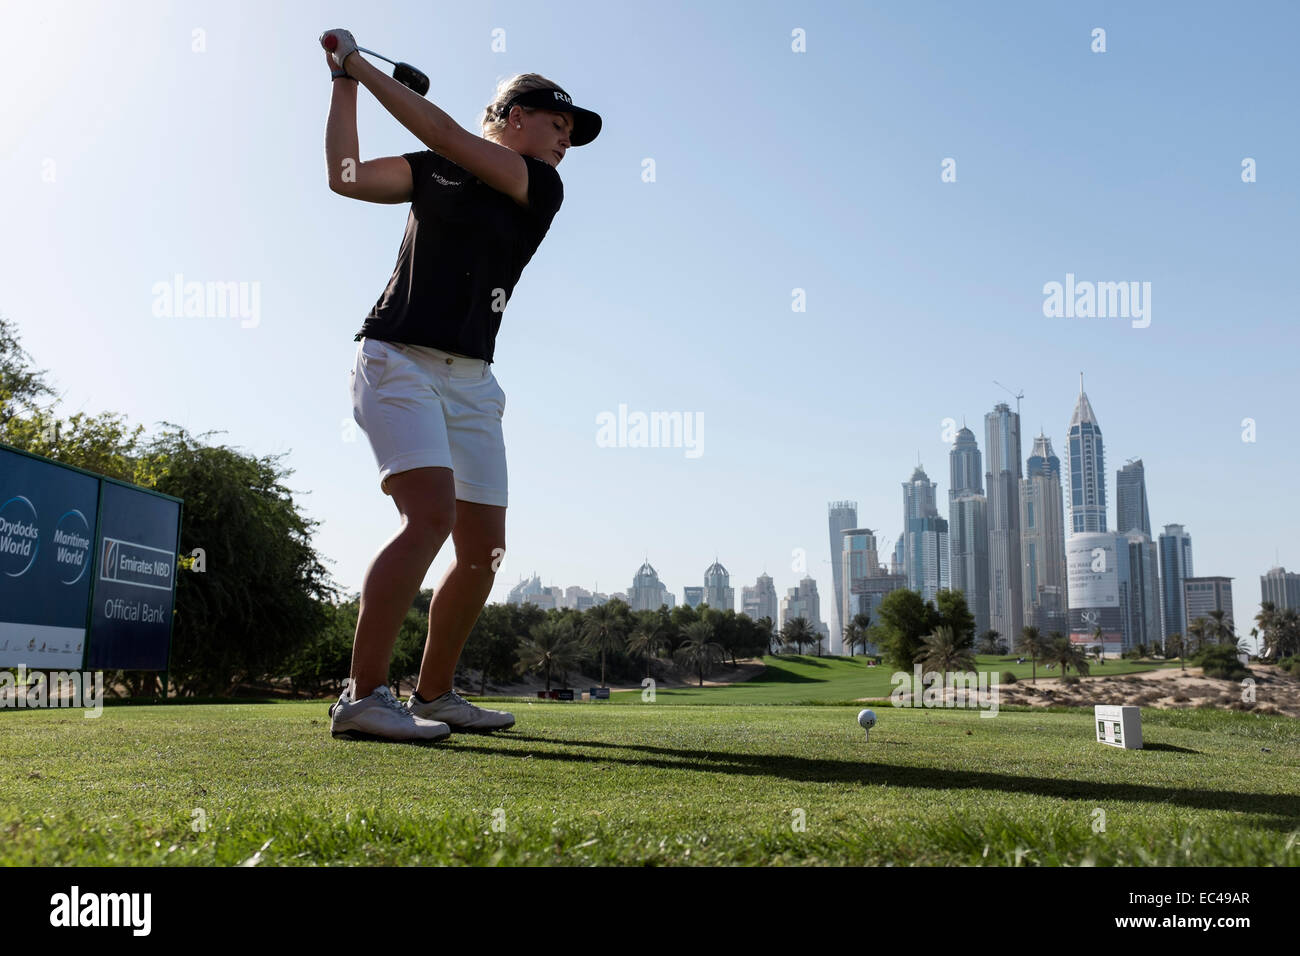 Dubai, Vereinigte Arabische Emirate. 9. Dezember 2014. Charley Hull England Abschlag vom 8. Abschlag im Emirates Golf Club beim pro-am Wettbewerb vor dem Omega Dubai Ladies Masters Golf-Turnier in Dubai-Vereinigte Arabische Emirate-Credit: Iain Masterton/Alamy Live News Stockfoto